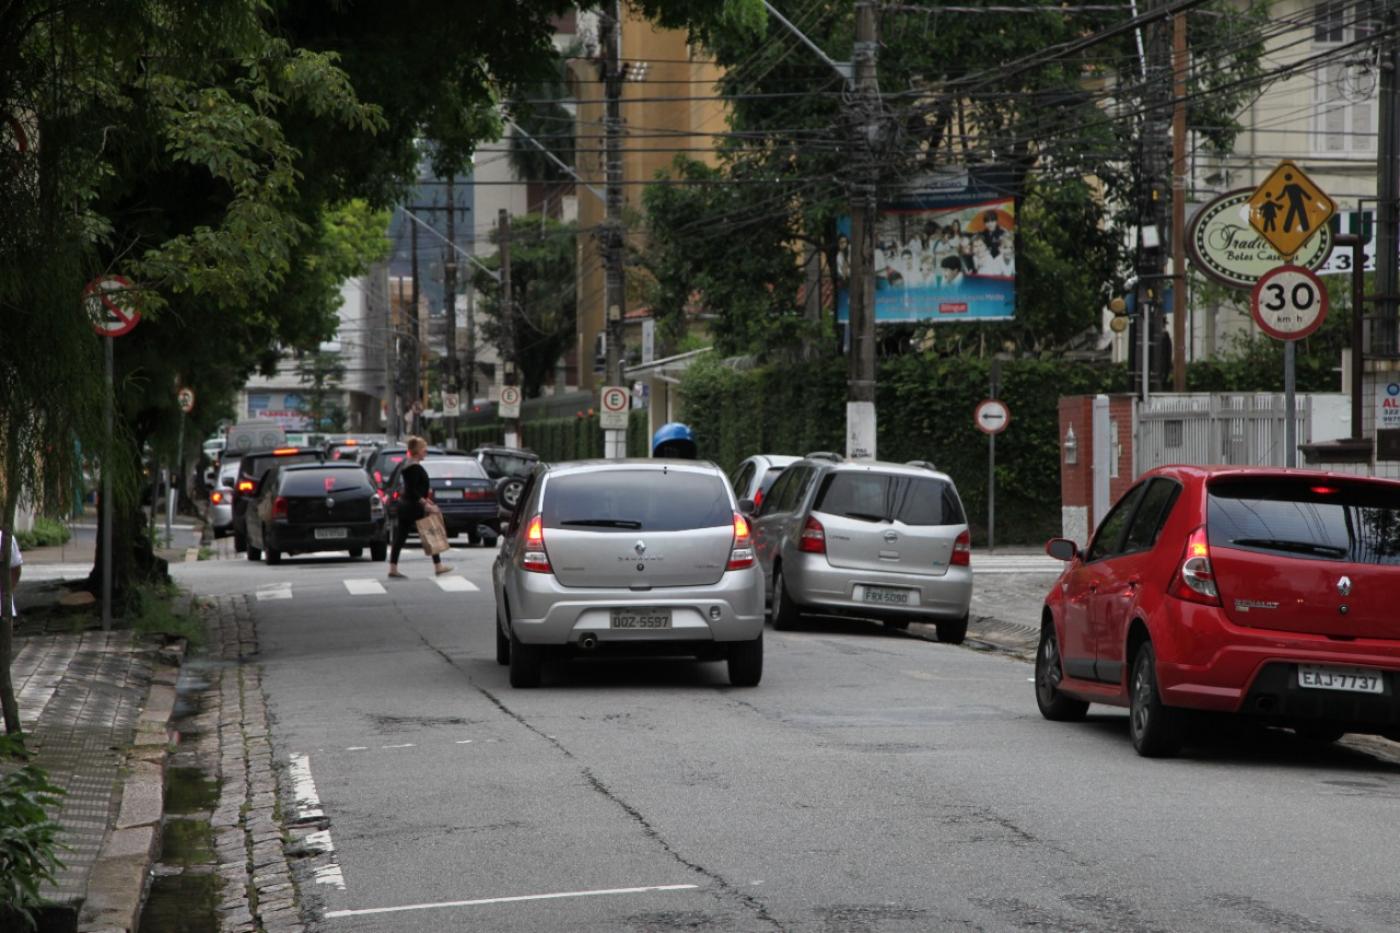 Rua com carros estacionado à direita e outros circulando. #paratodosverem